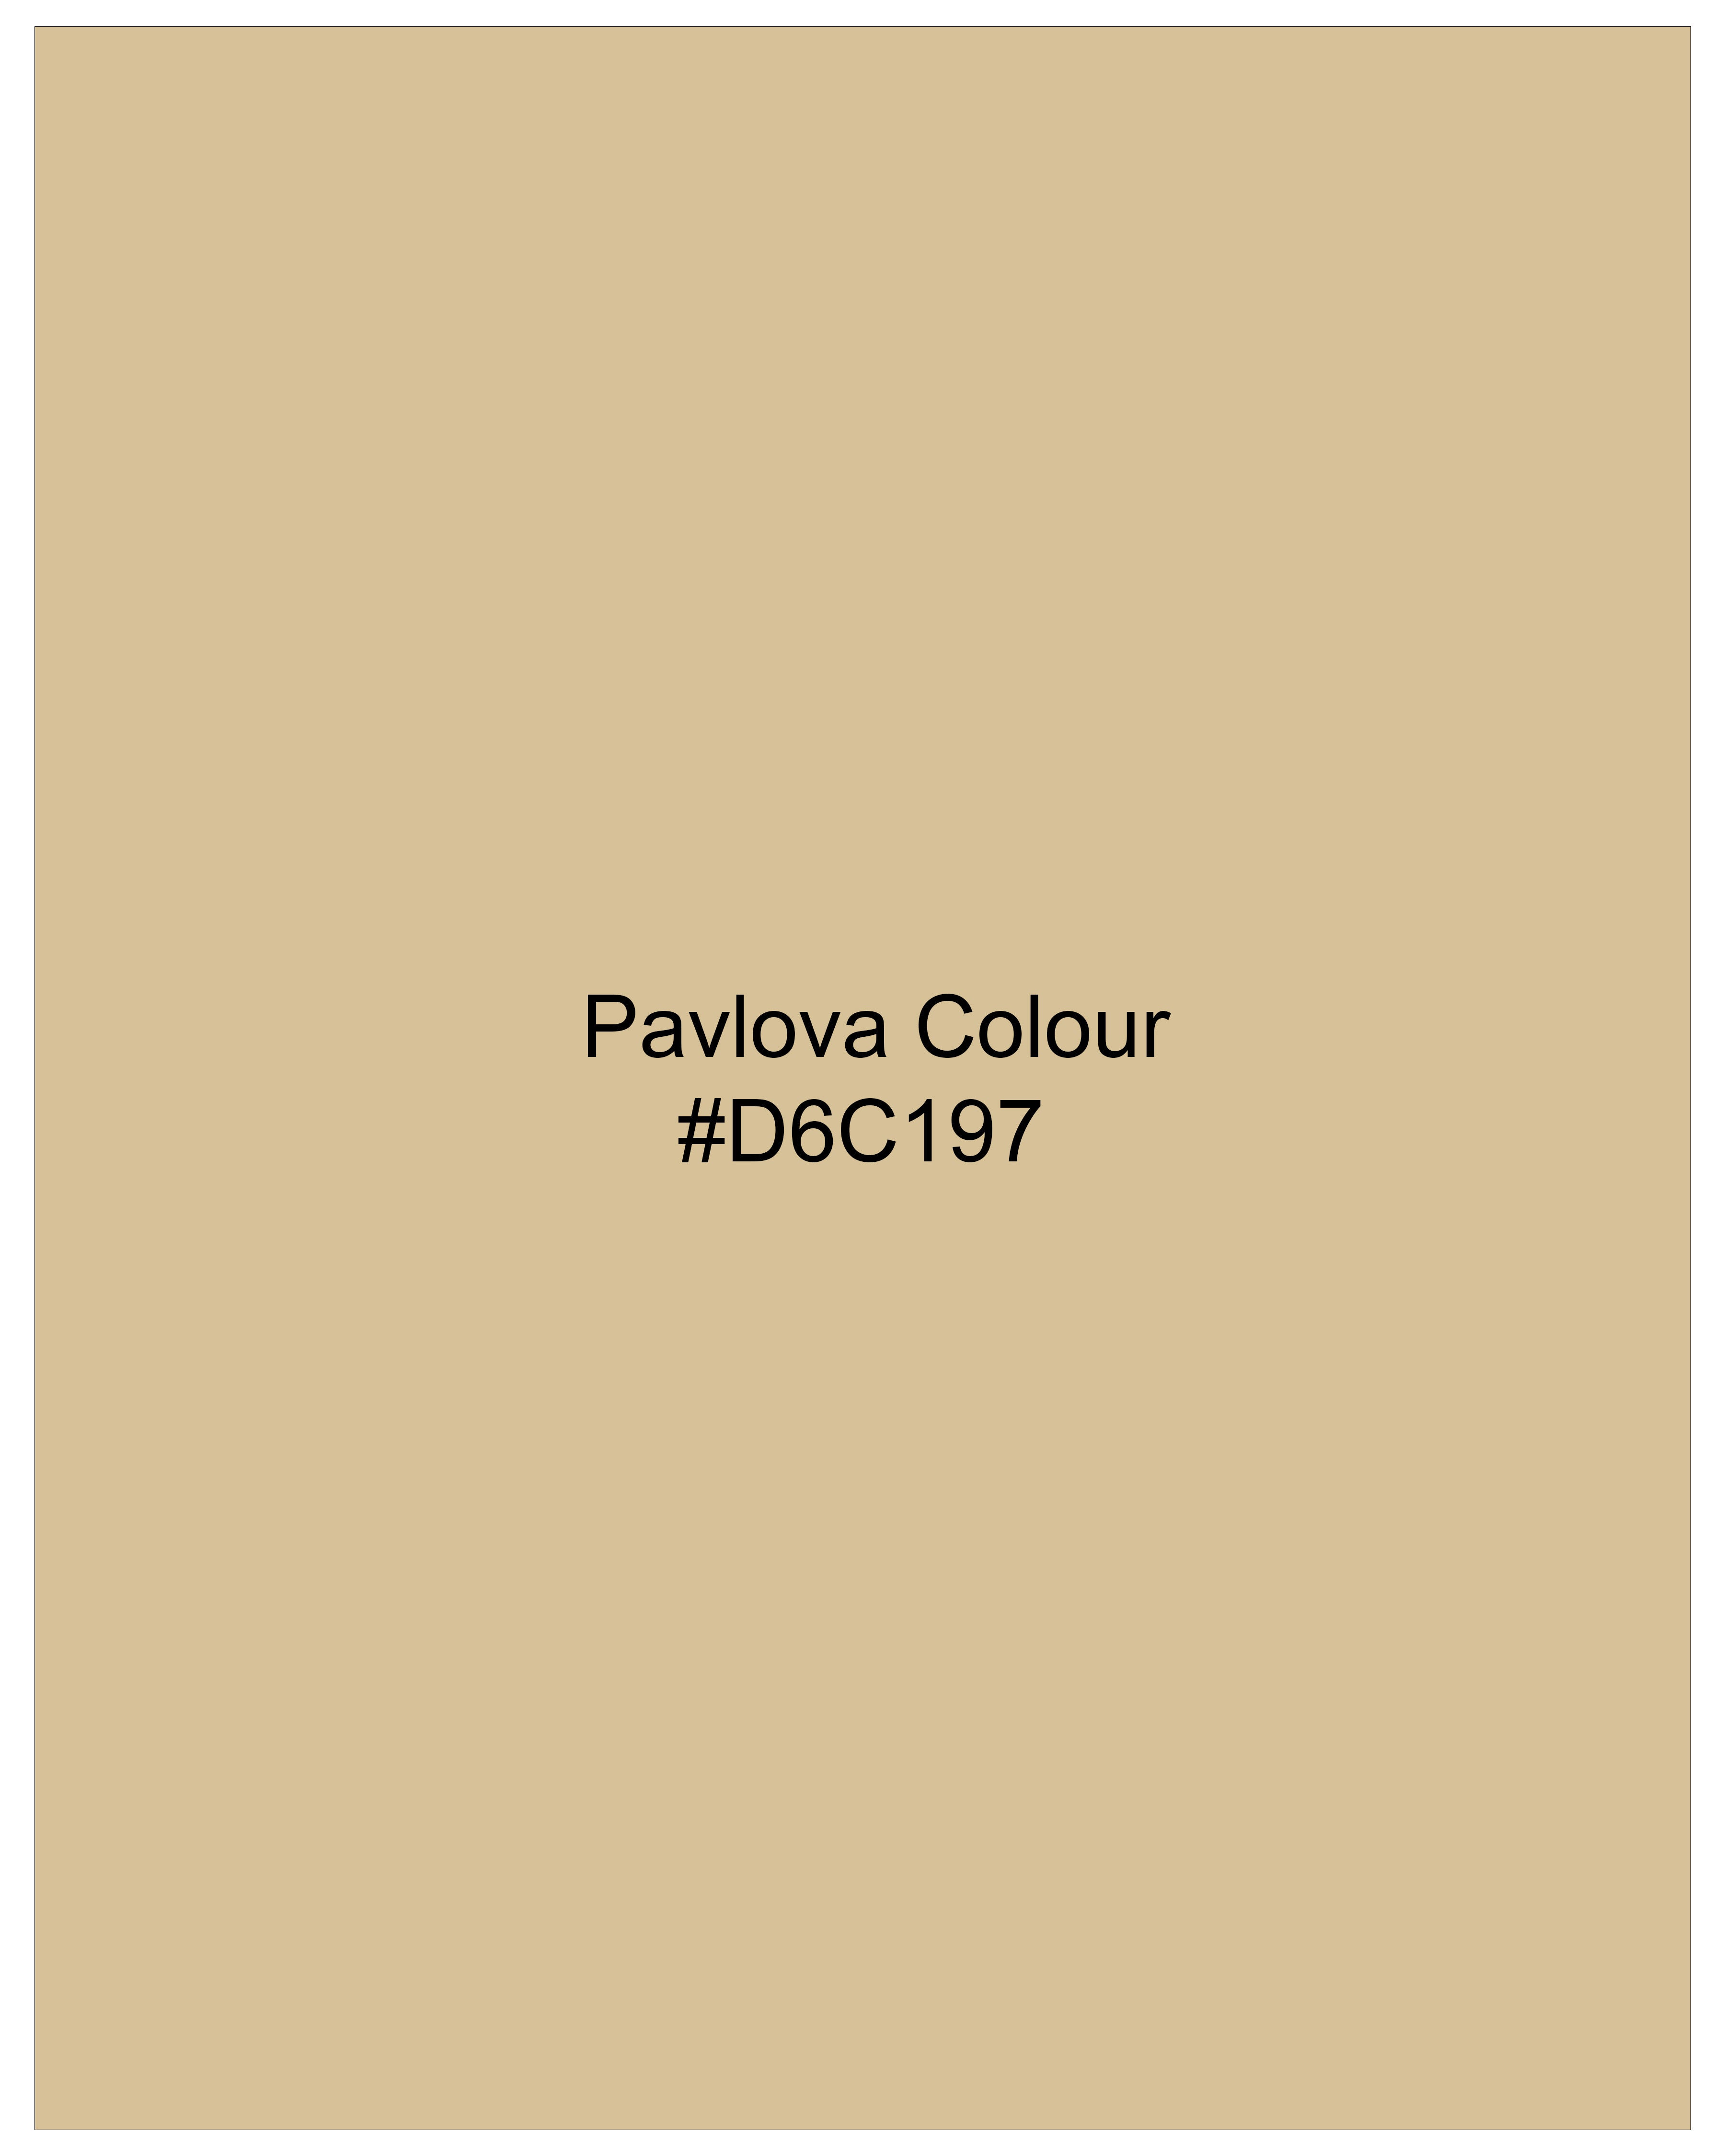 Pavlova Cream Solid Premium Cotton Waistcoat V2647-36, V2647-38, V2647-40, V2647-42, V2647-44, V2647-46, V2647-48, V2647-50, V2647-52, V2647-54, V2647-56, V2647-58, V2647-60